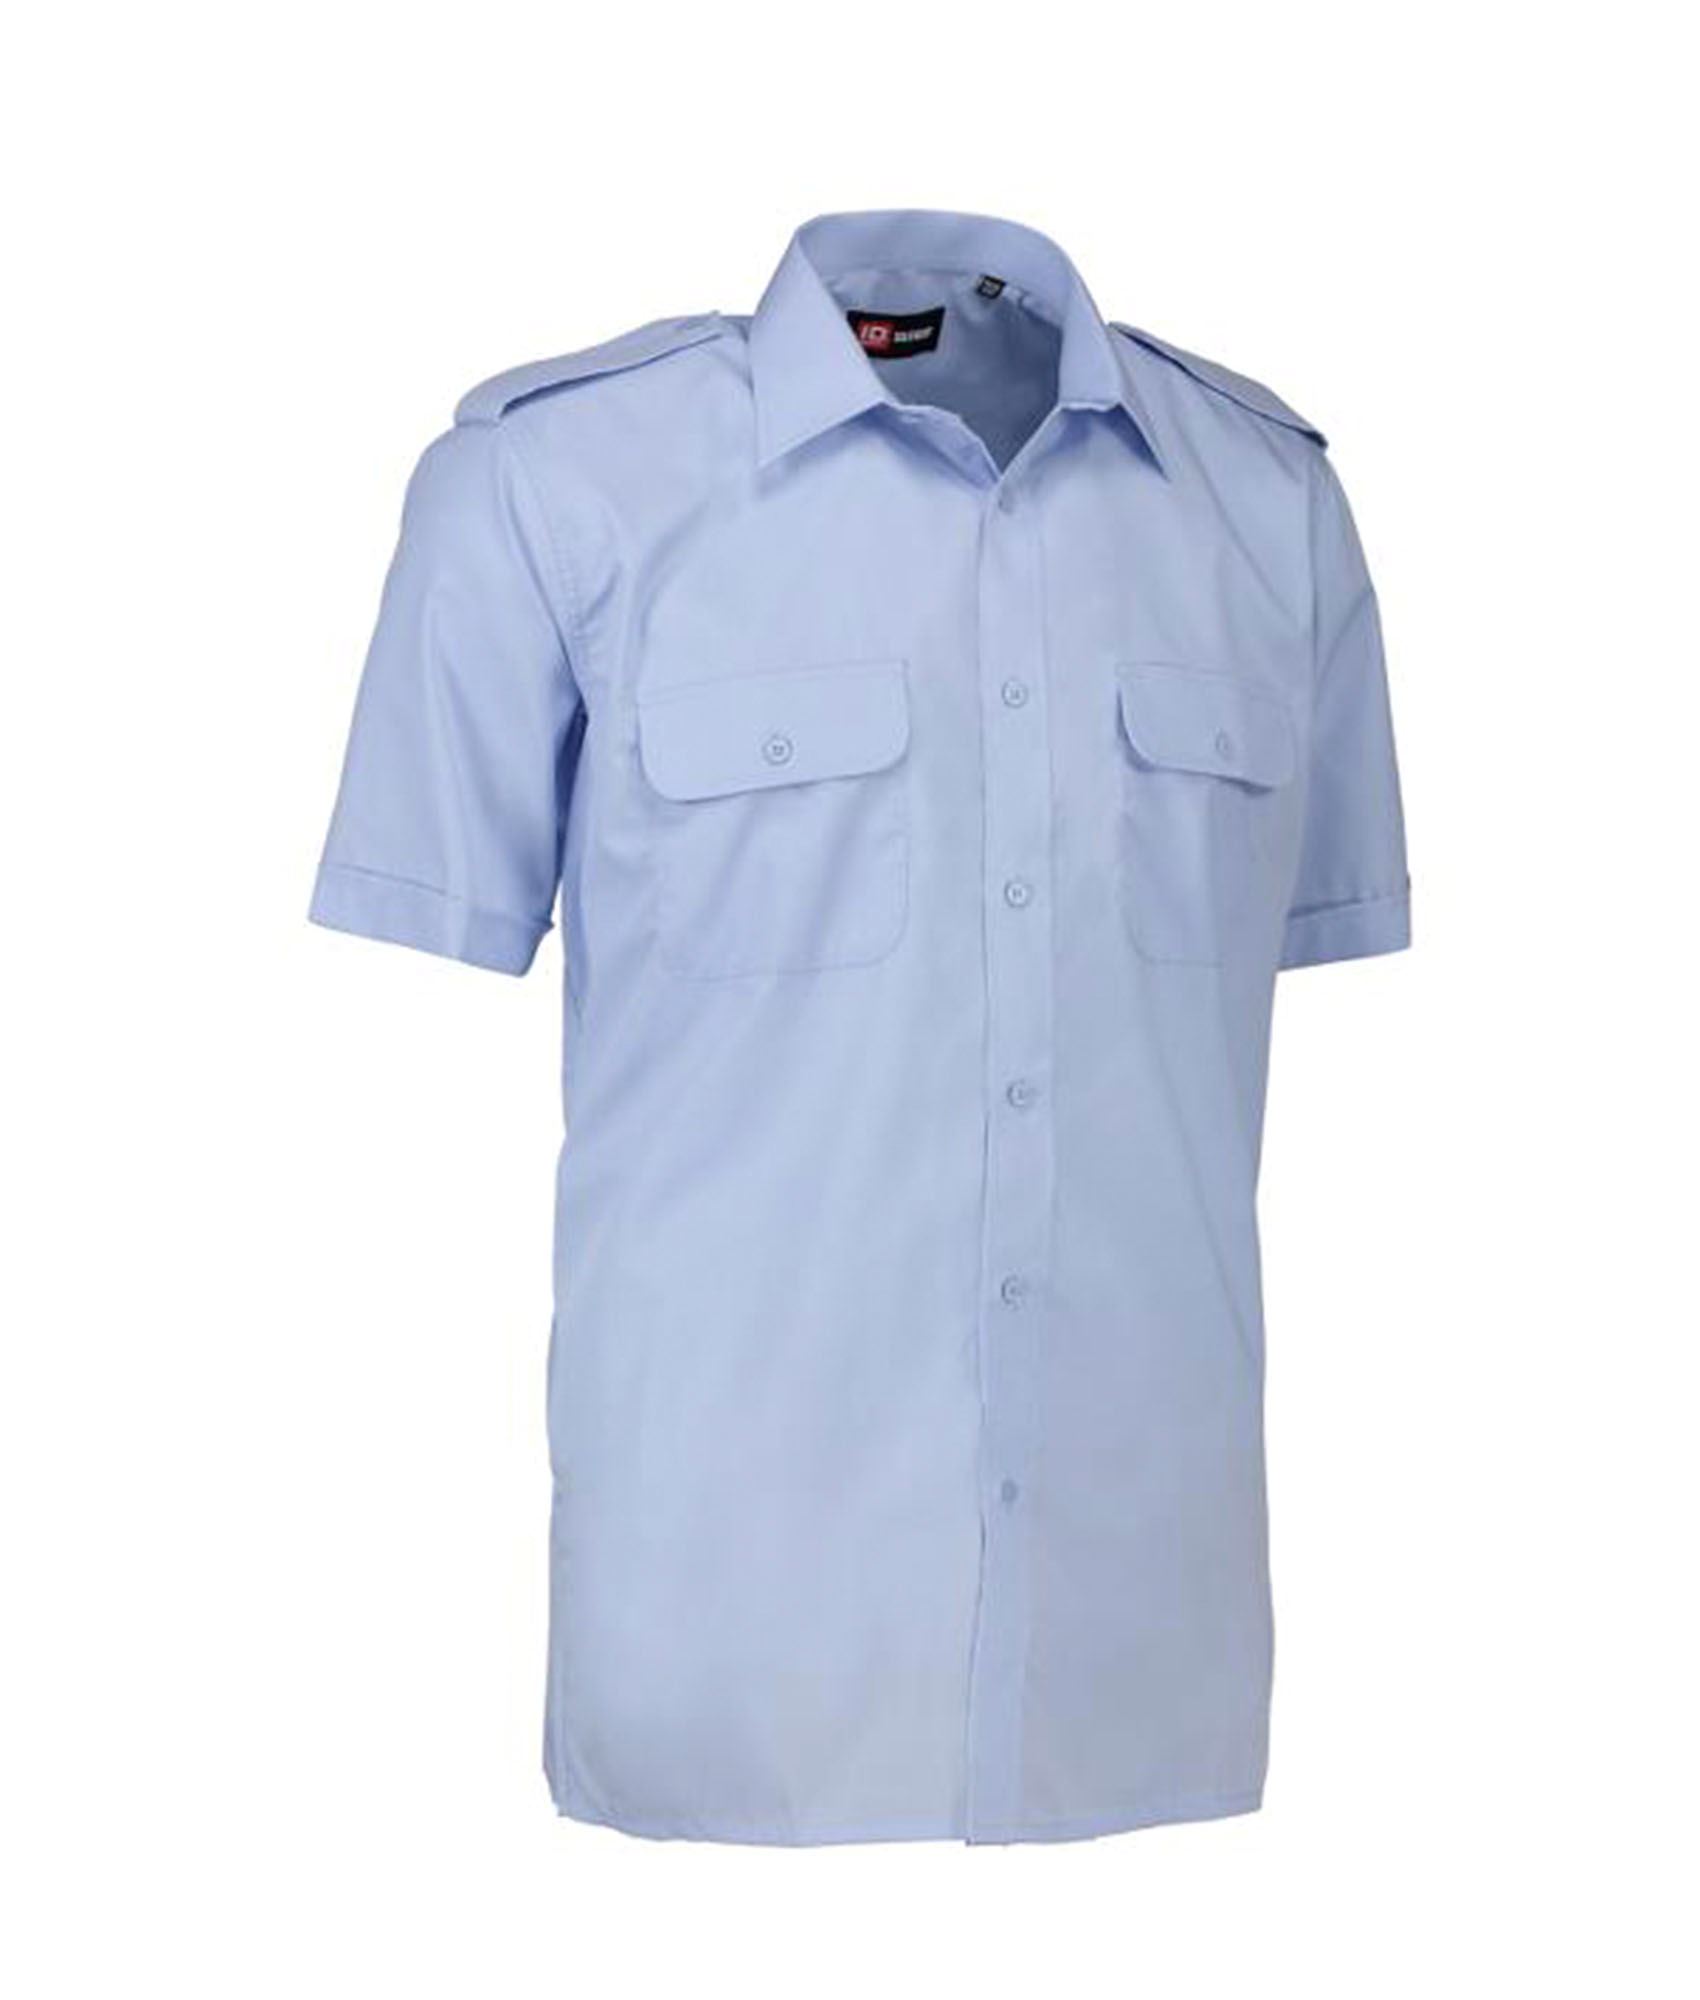 Let tårn Margaret Mitchell Pilotskjorte med korte ærmer fra ID. Blå. Køb hos 417.dk